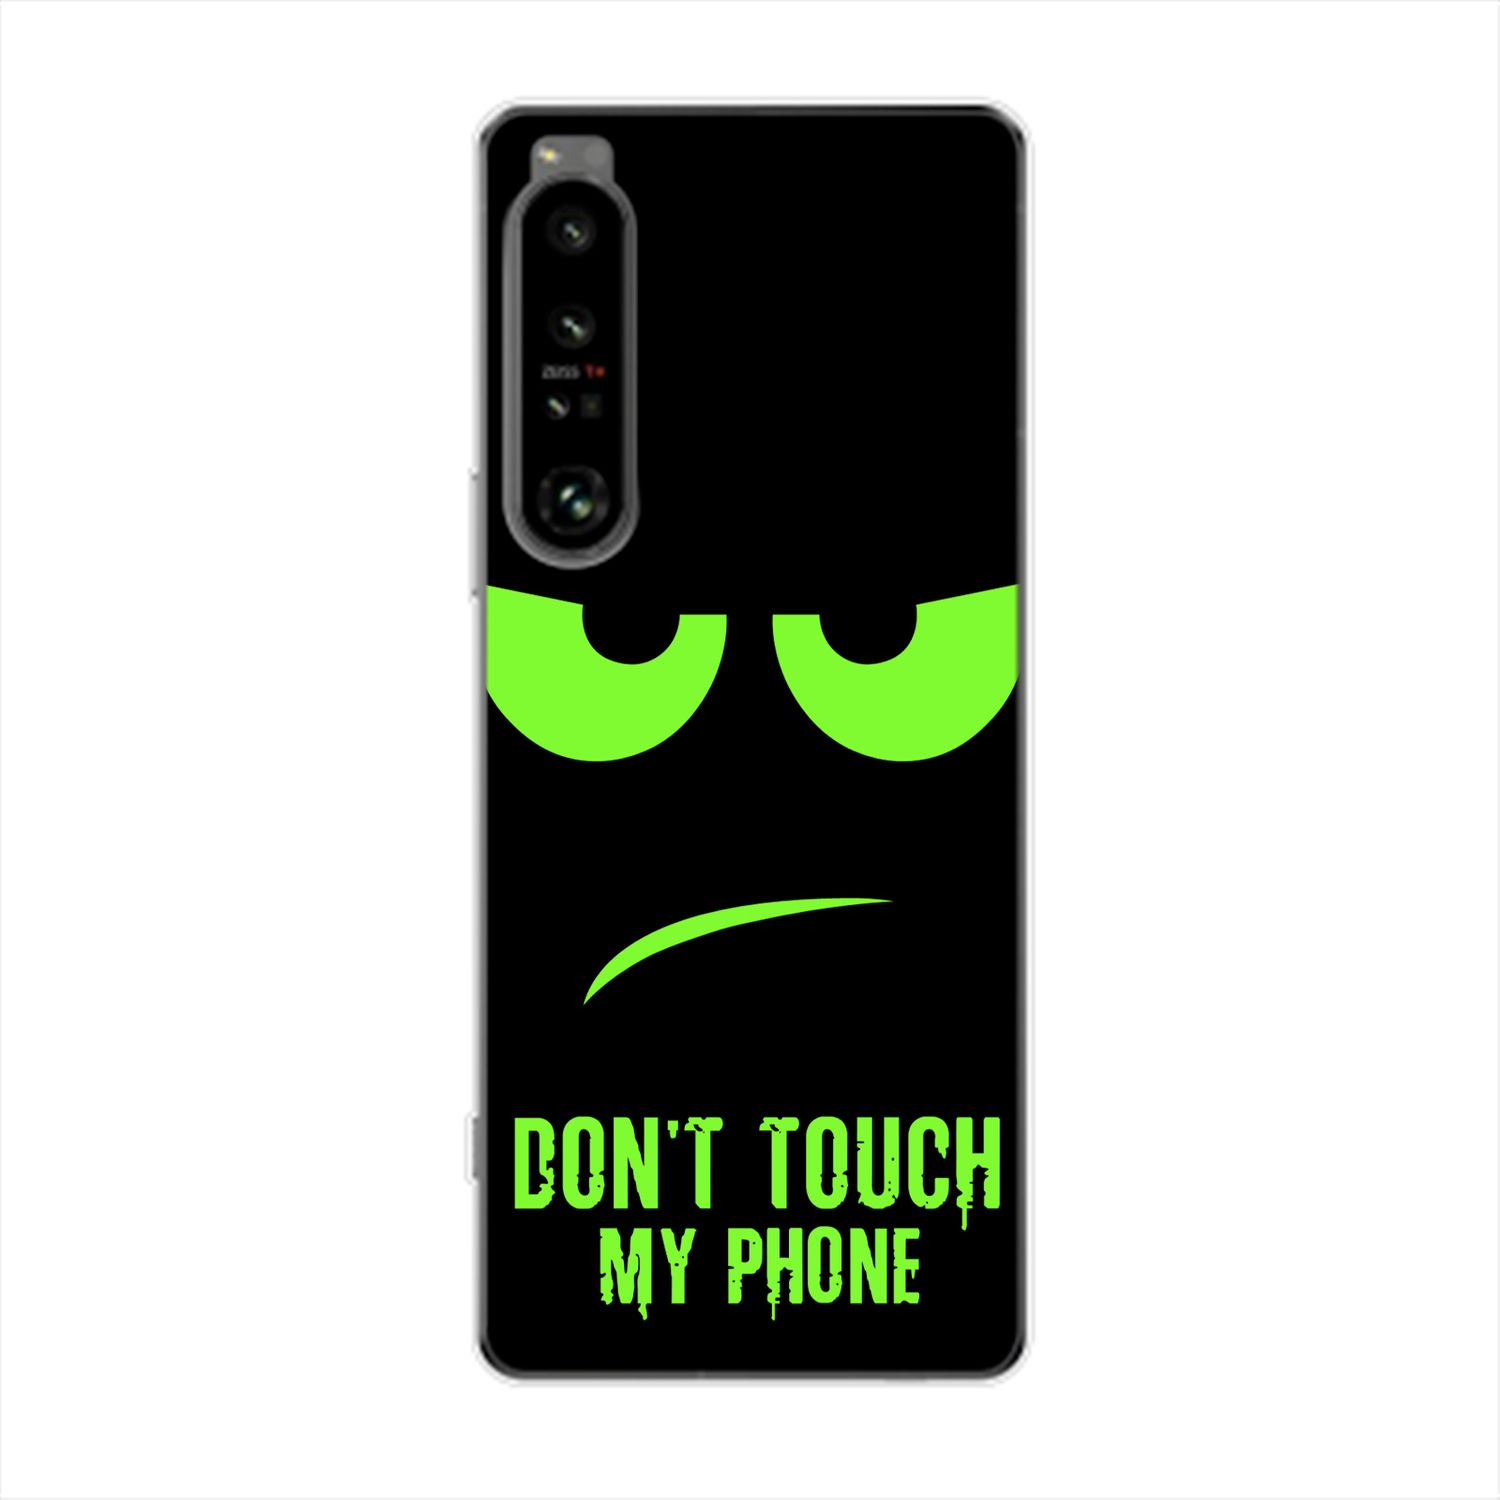 Case, Backcover, Sony, My Xperia Grün KÖNIG Touch Dont 1 DESIGN IV, Phone